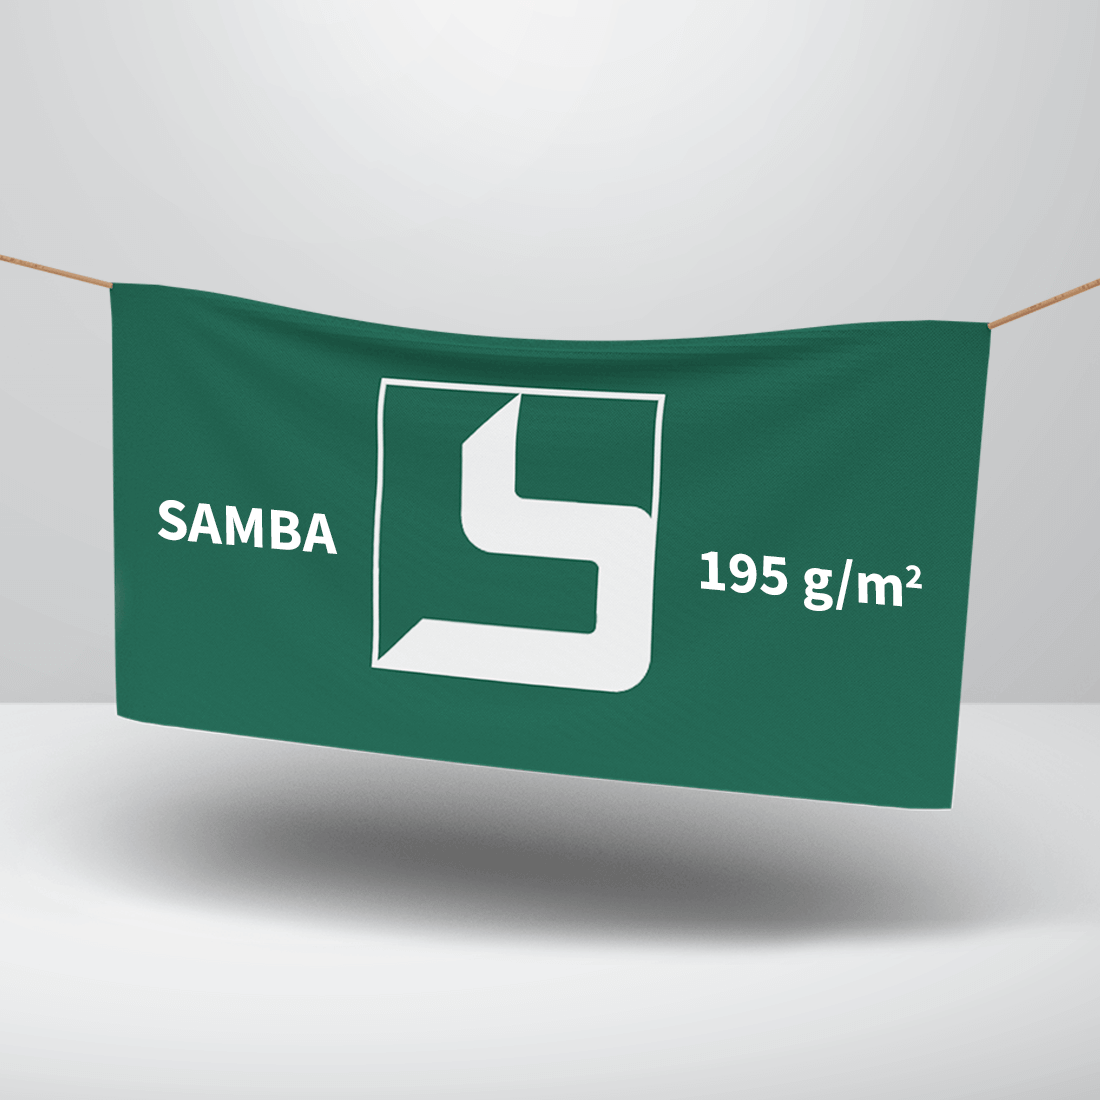 Texstil banner SAMBA: 195 g/m2